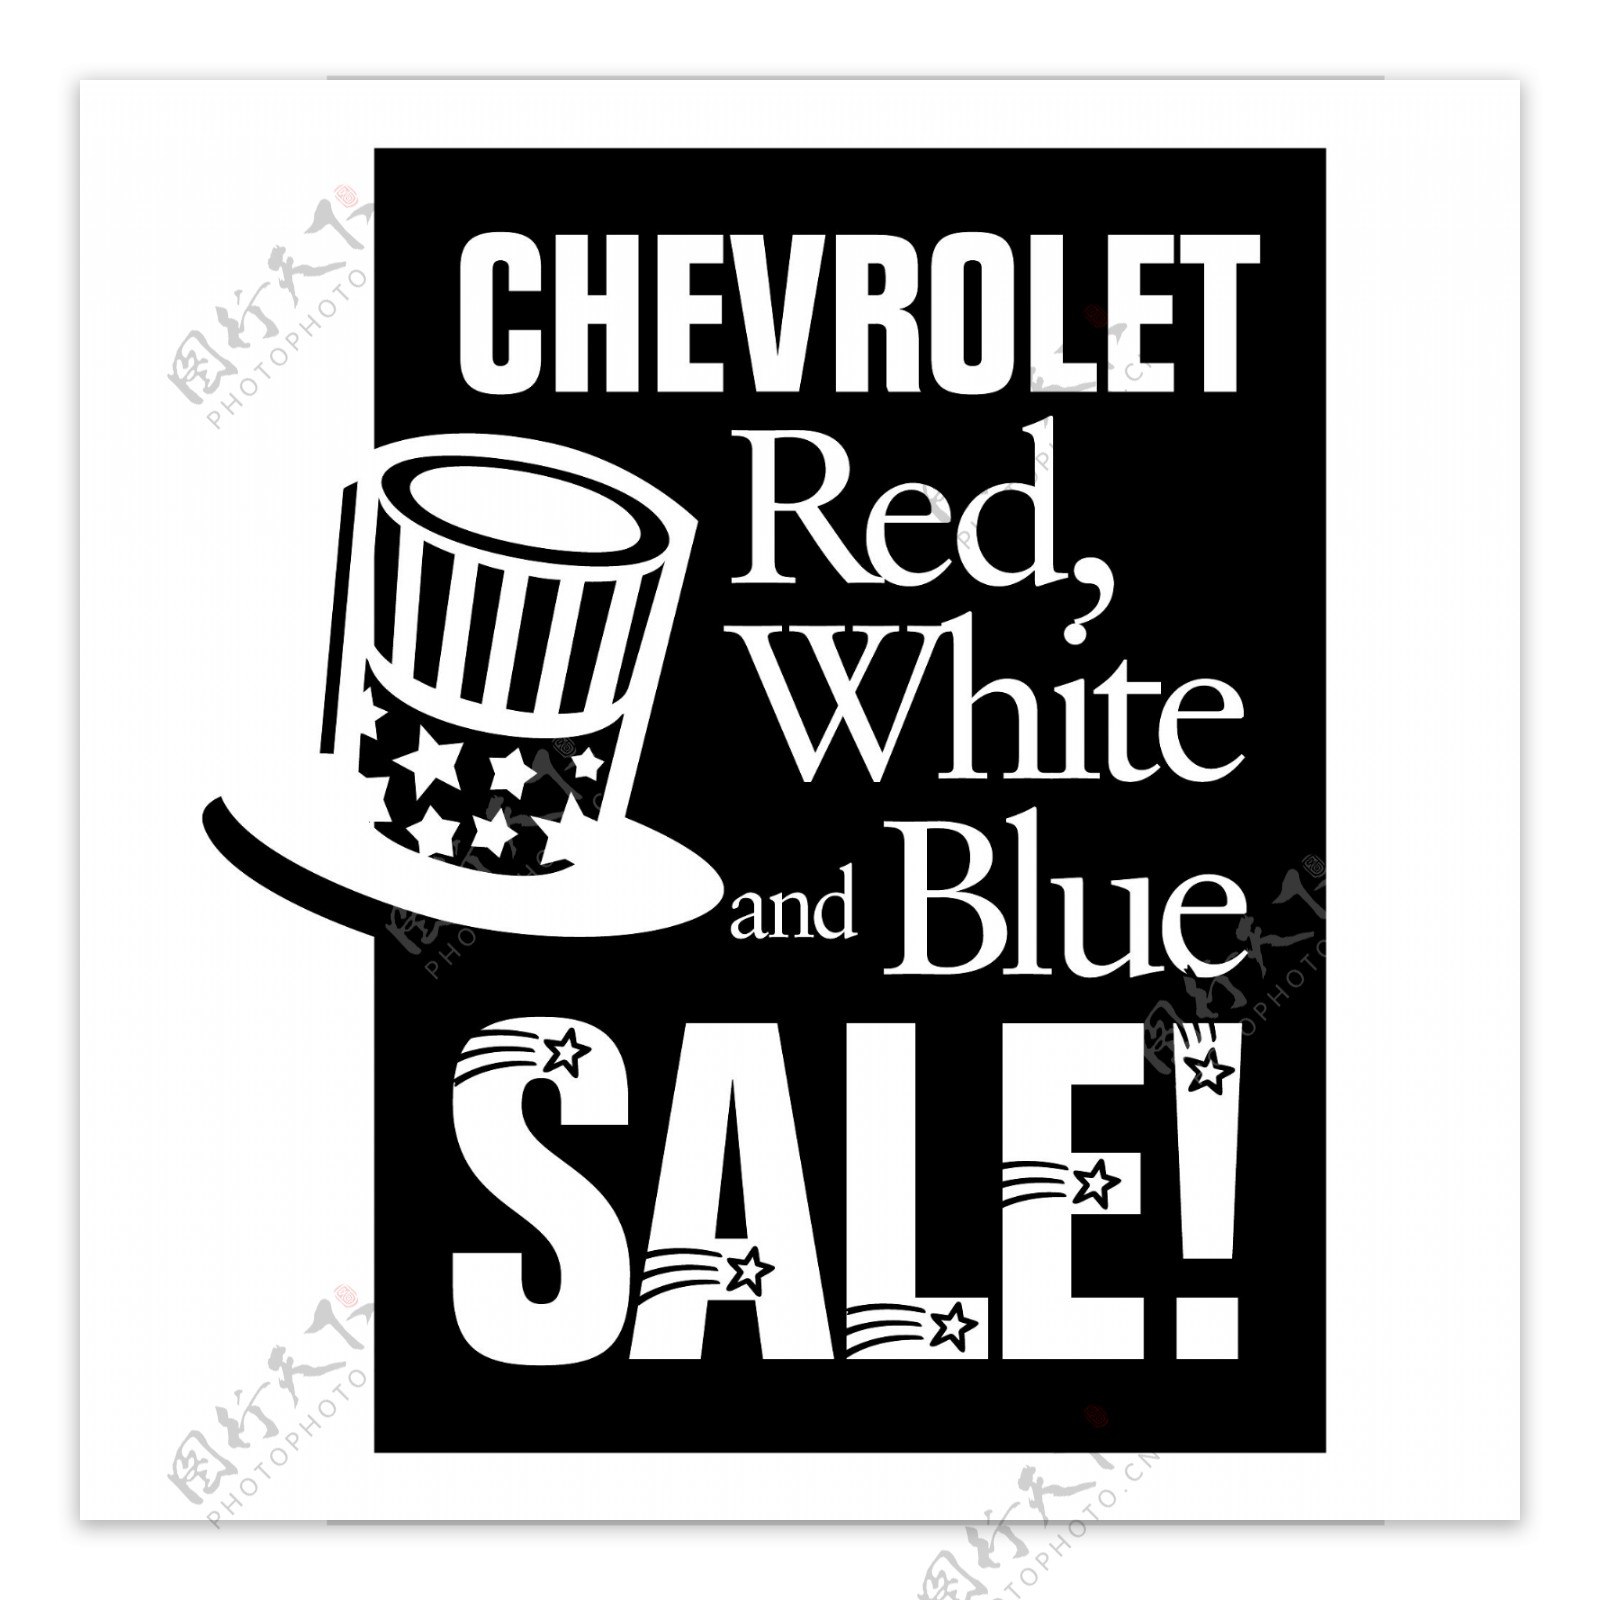 雪佛兰红色白色和蓝色的销售